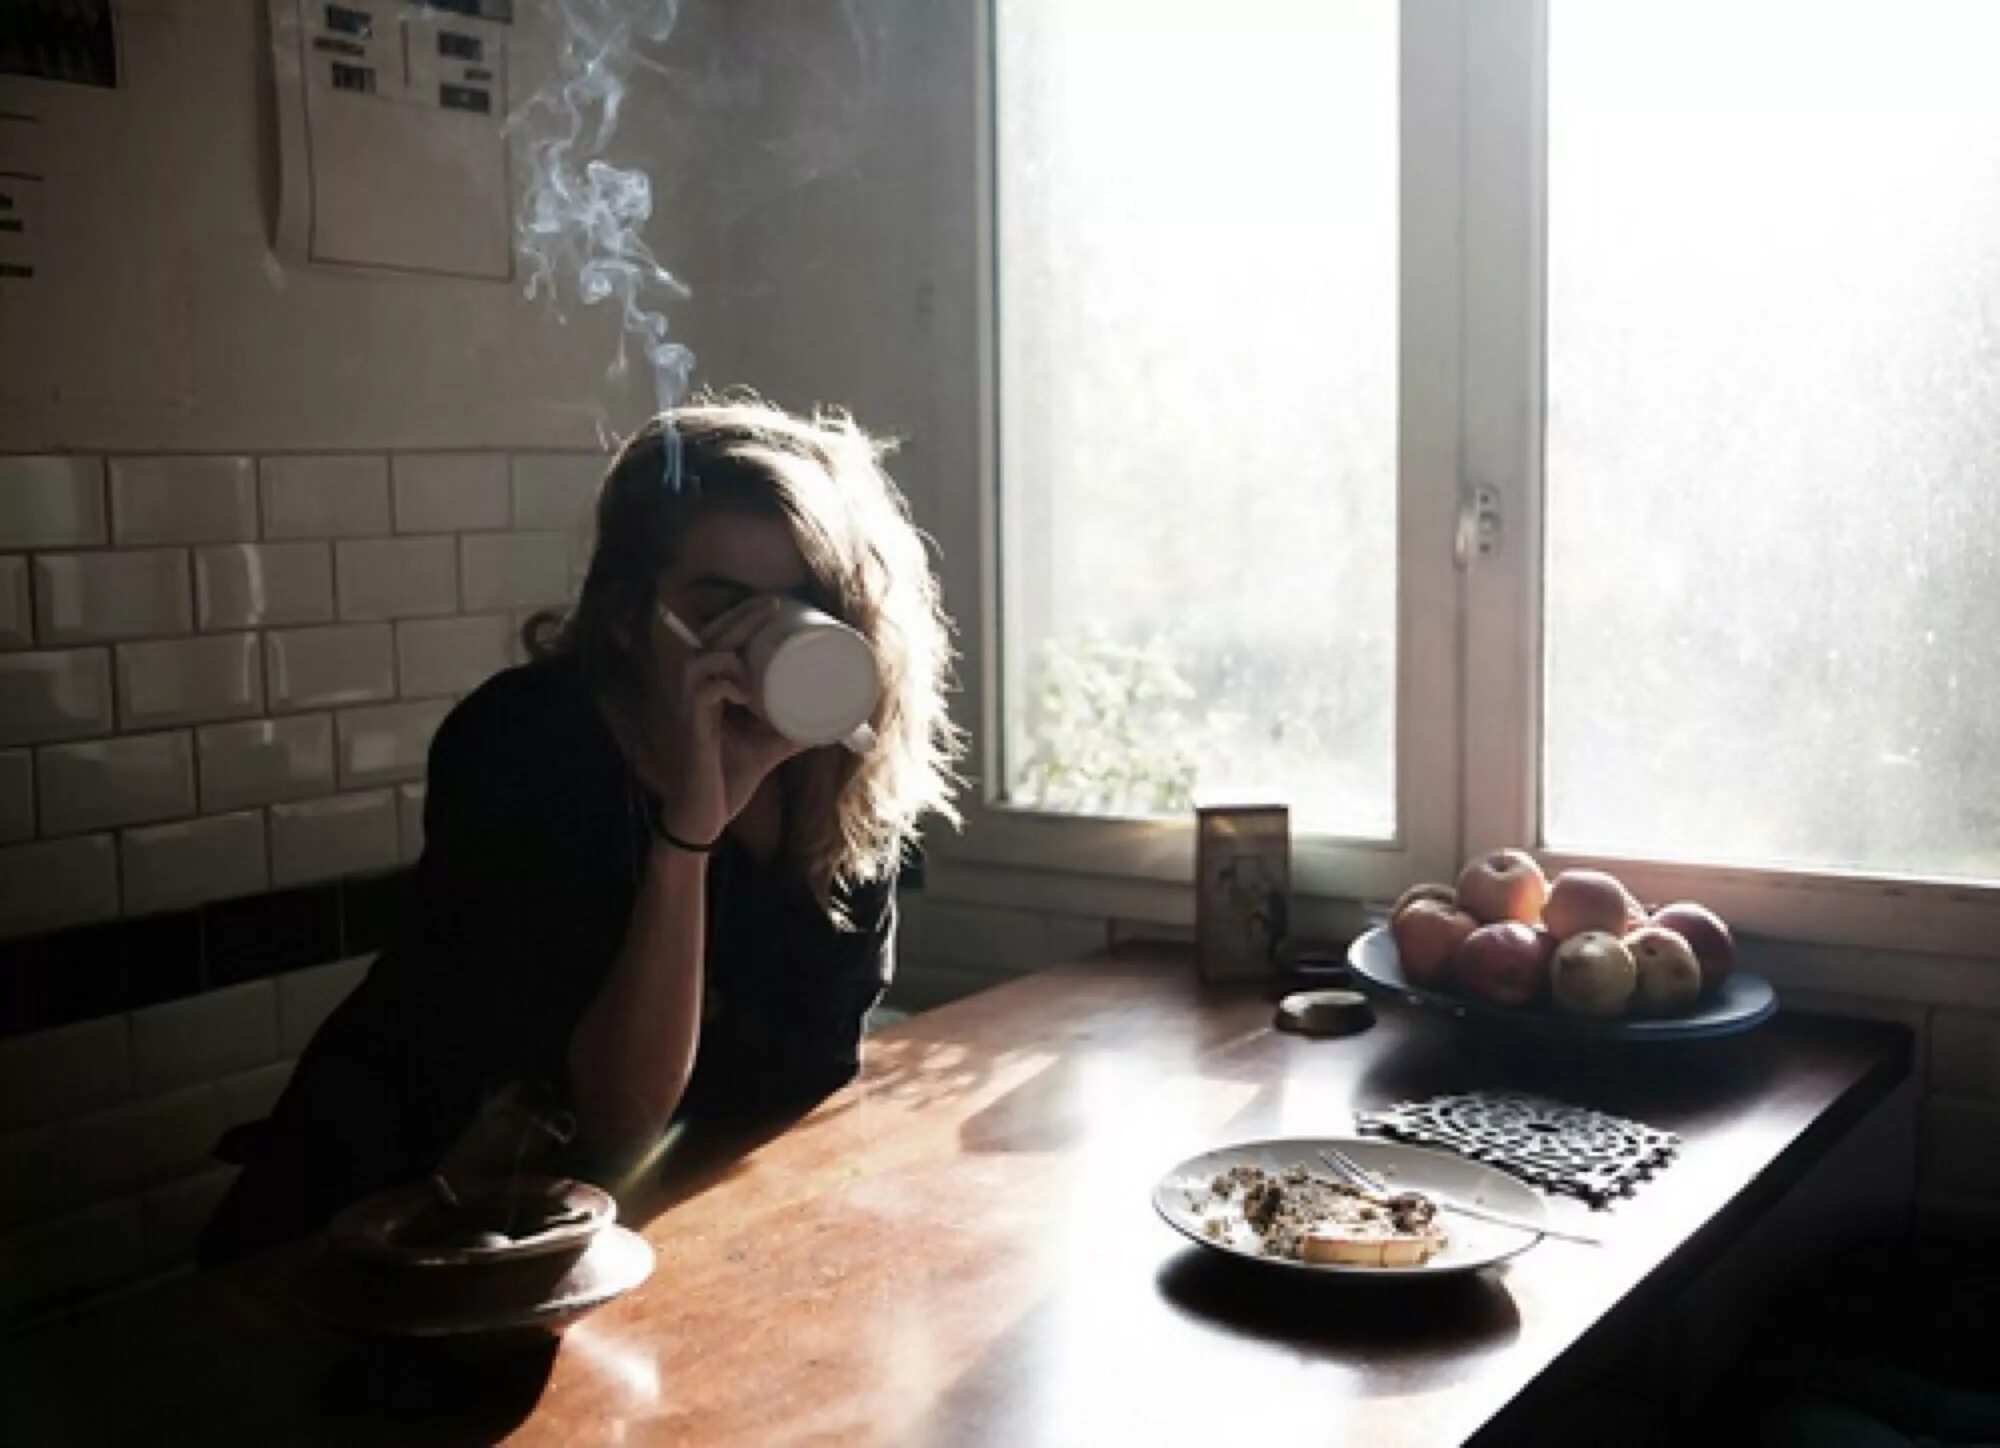 Уставший от всего курю ее. Утро Эстетика девушка. Девушка курит на кухне. Грустная девушка на кухне. Девушка с сигаретой и кофе.